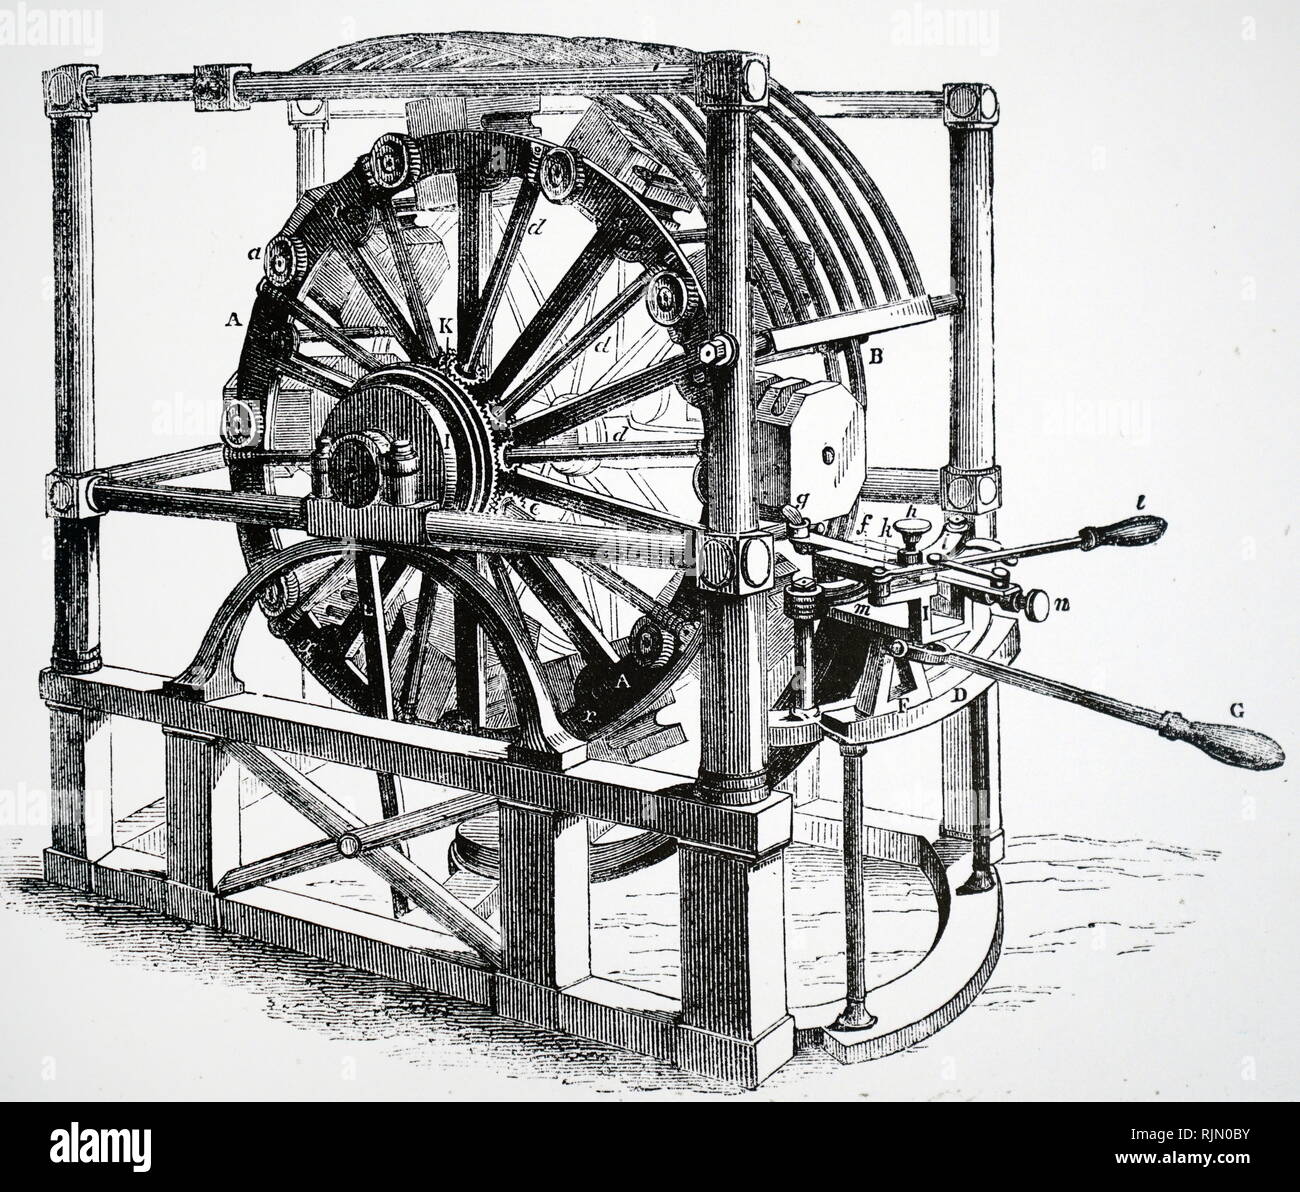 Illustrazione che mostra gli uomini in un tapis roulant, lavorando a rag-e-pompa a catena, per svuotare una miniera. Da Agricola "De re metallica", Basilea Foto Stock